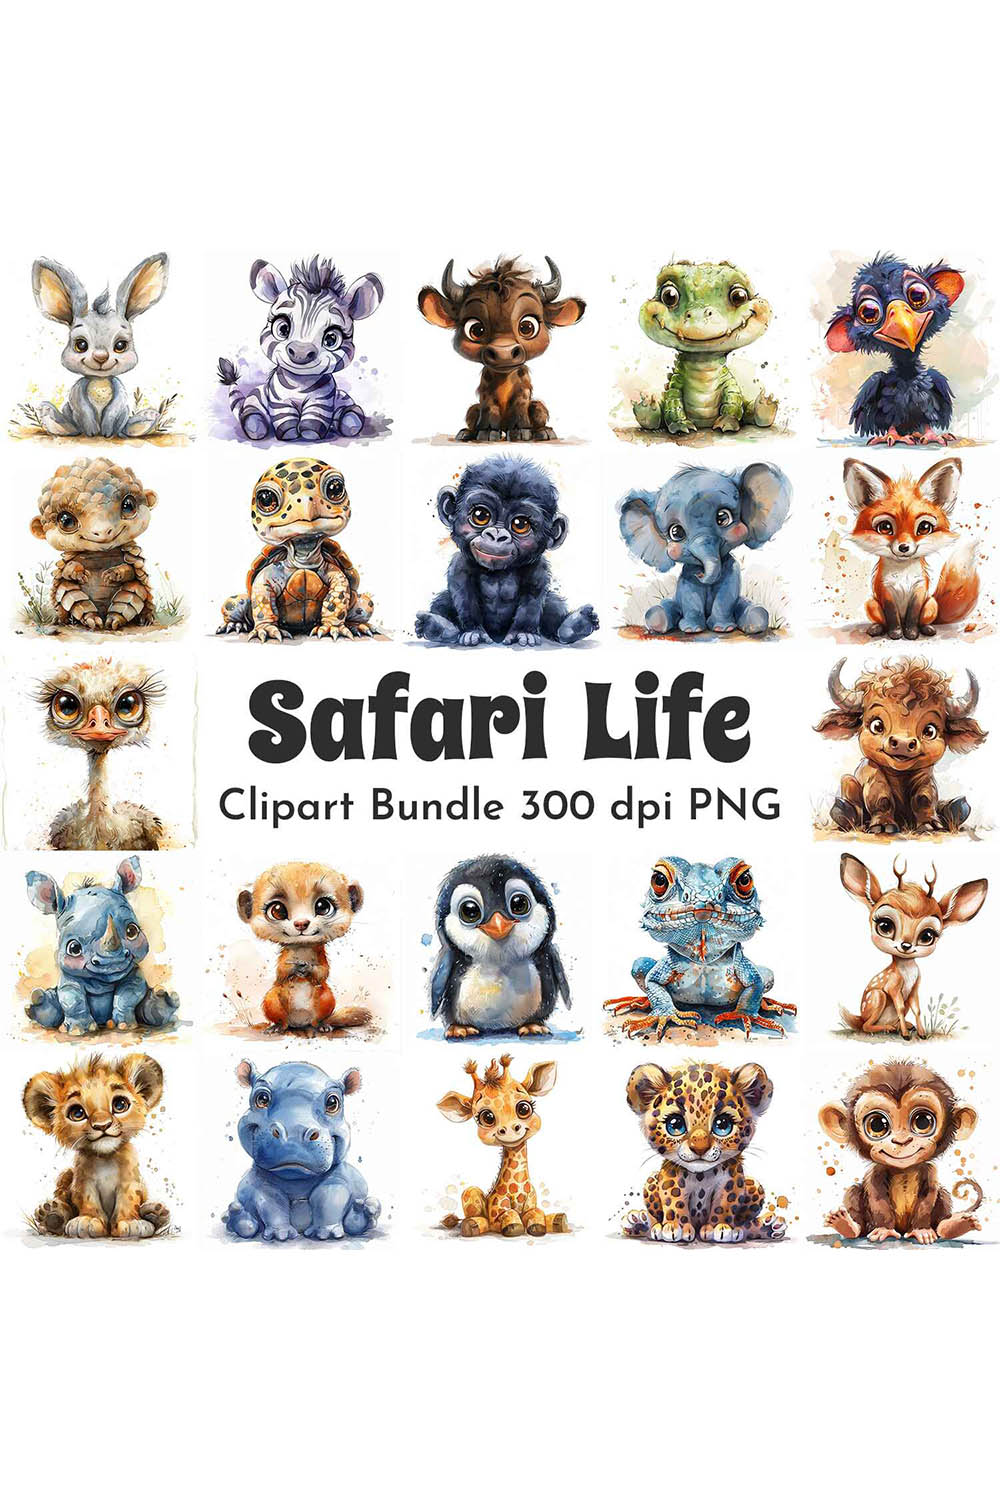 Sajari Life Clipart Bundle pinterest preview image.